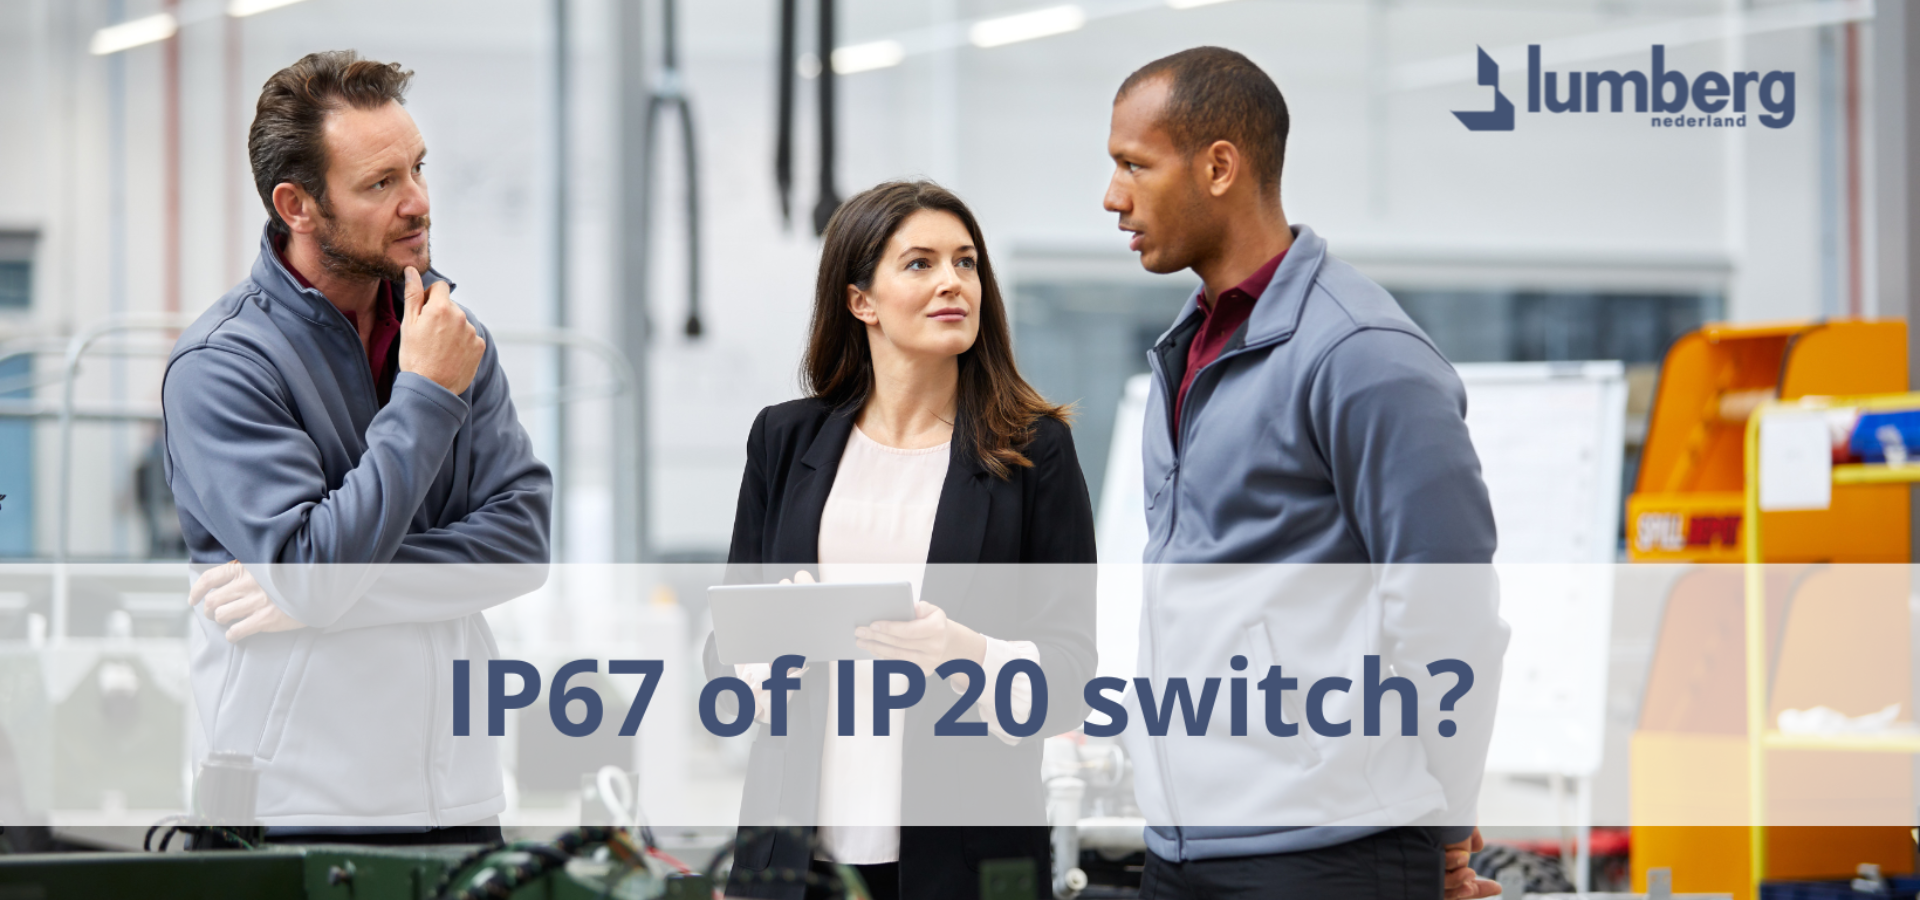 IP67 of IP20 switch